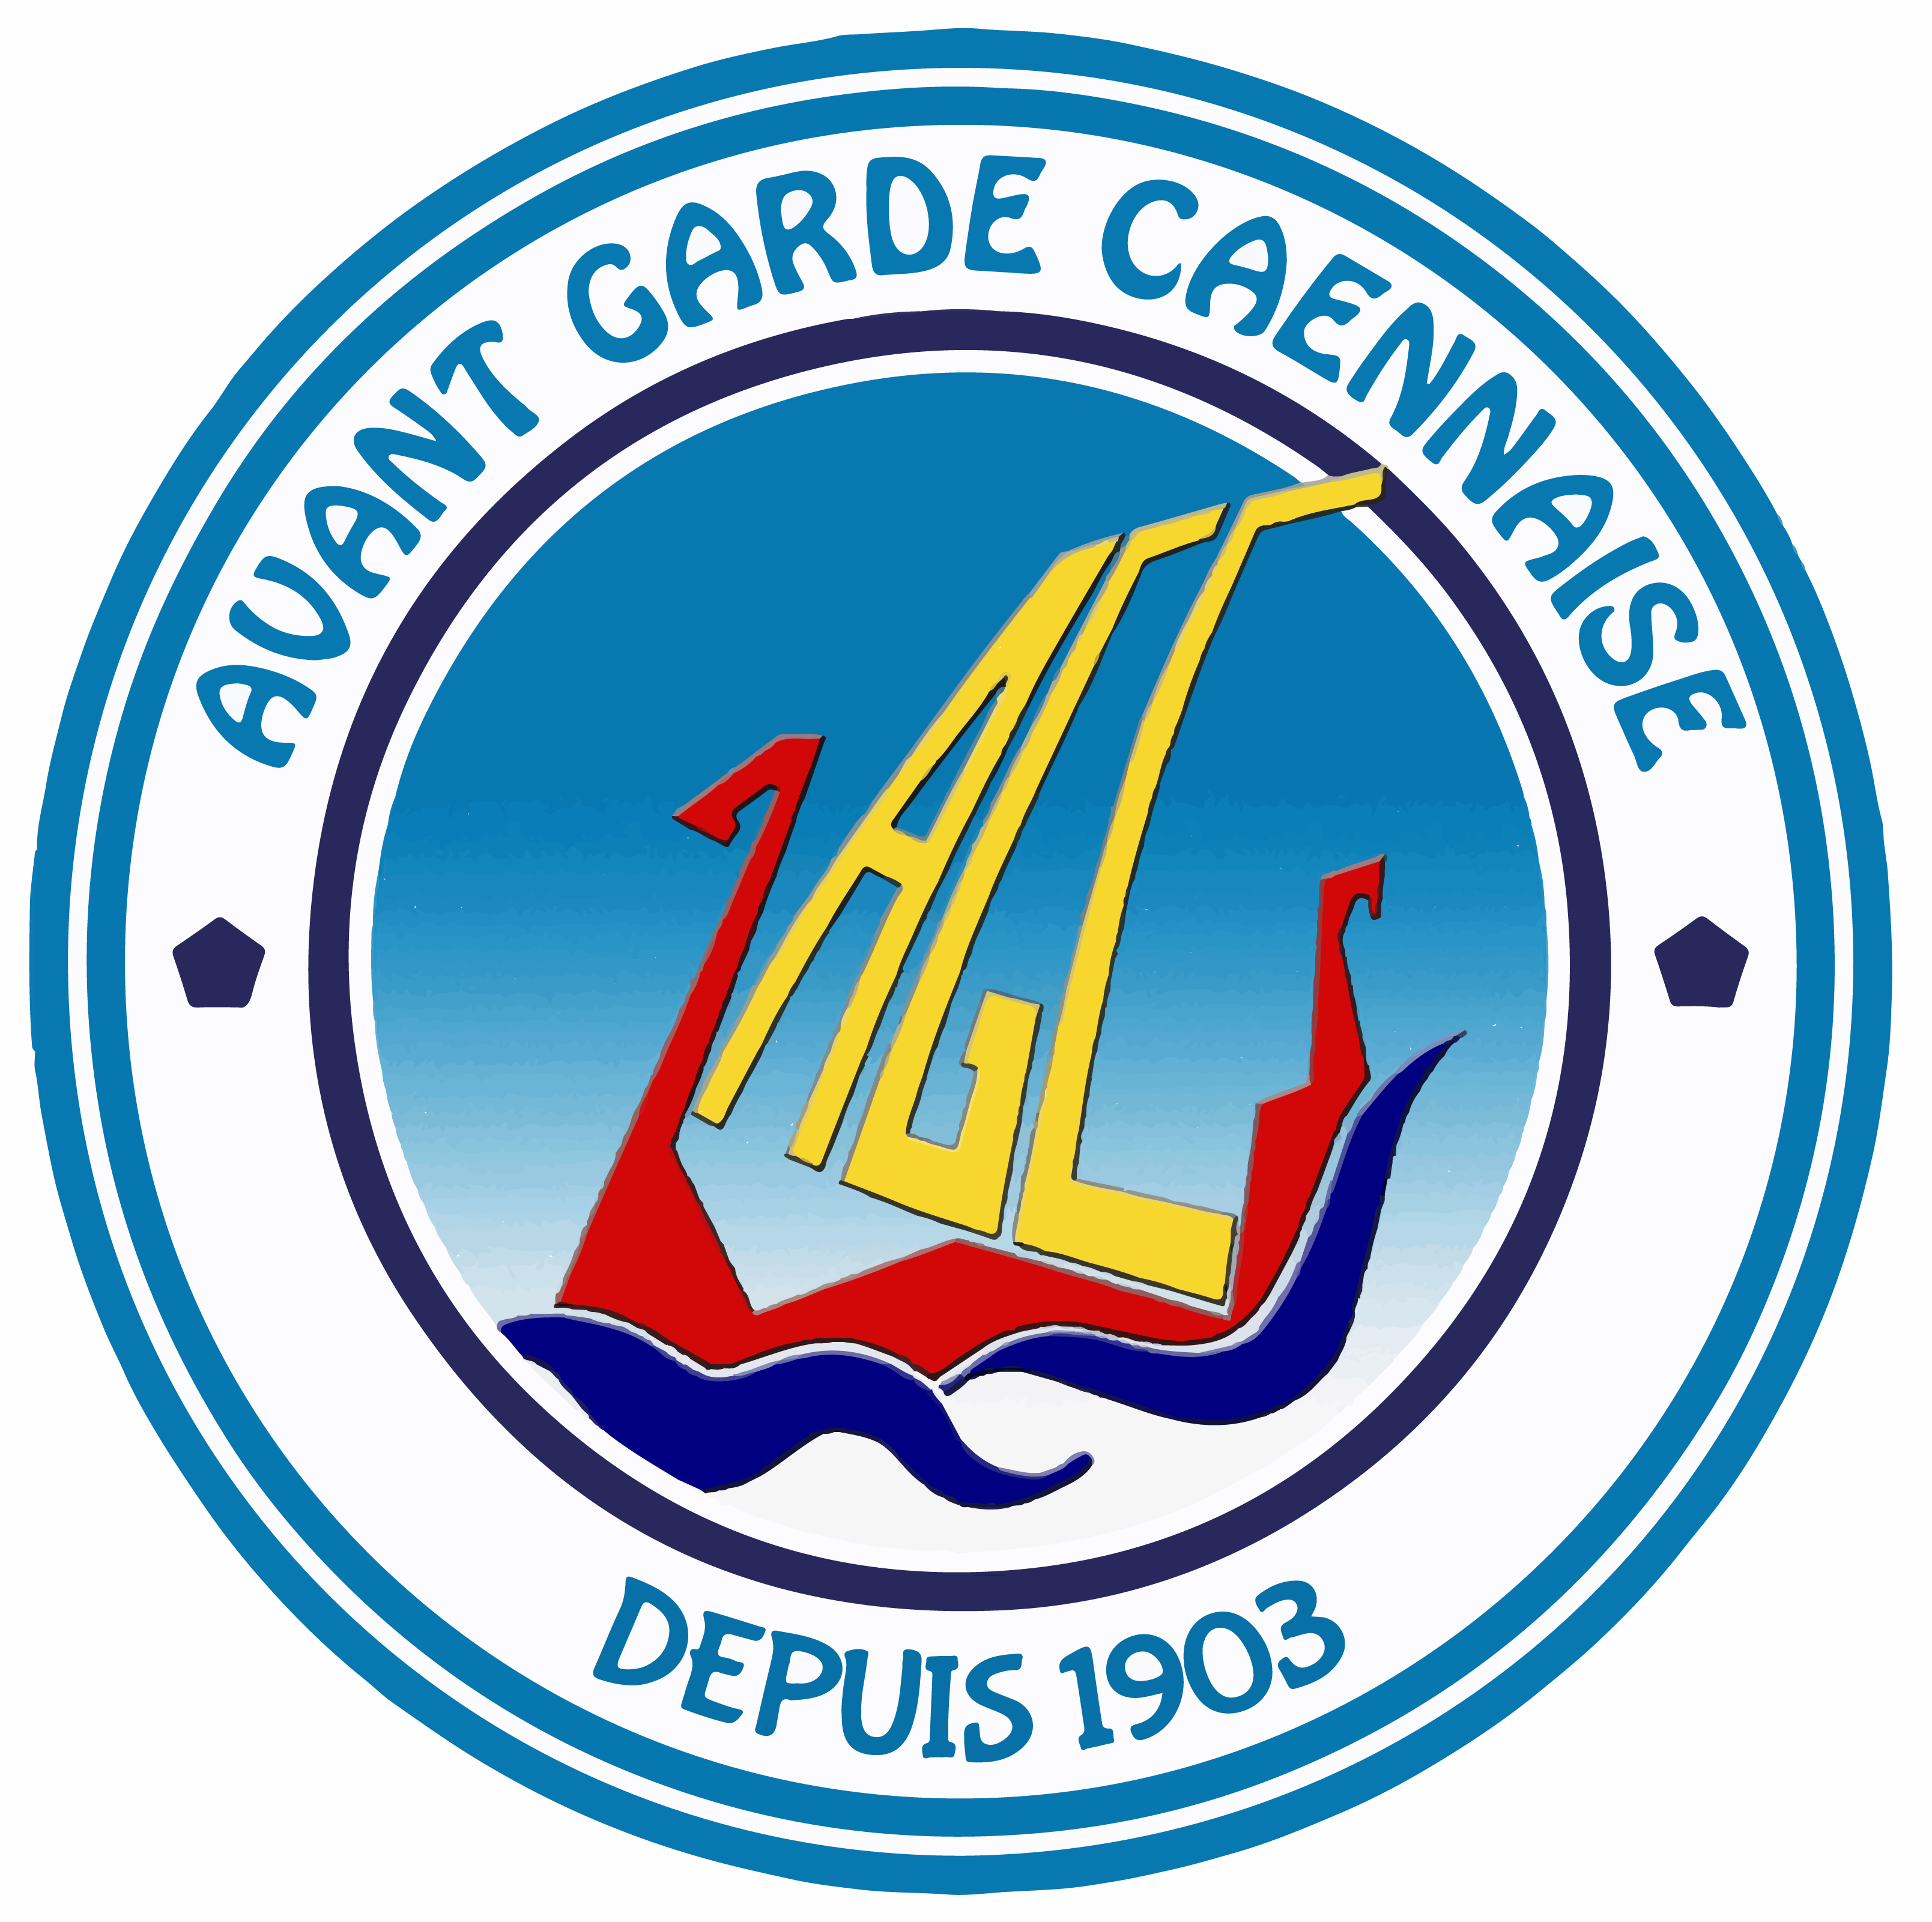 AVANT GARDE CAENNAISE Logo